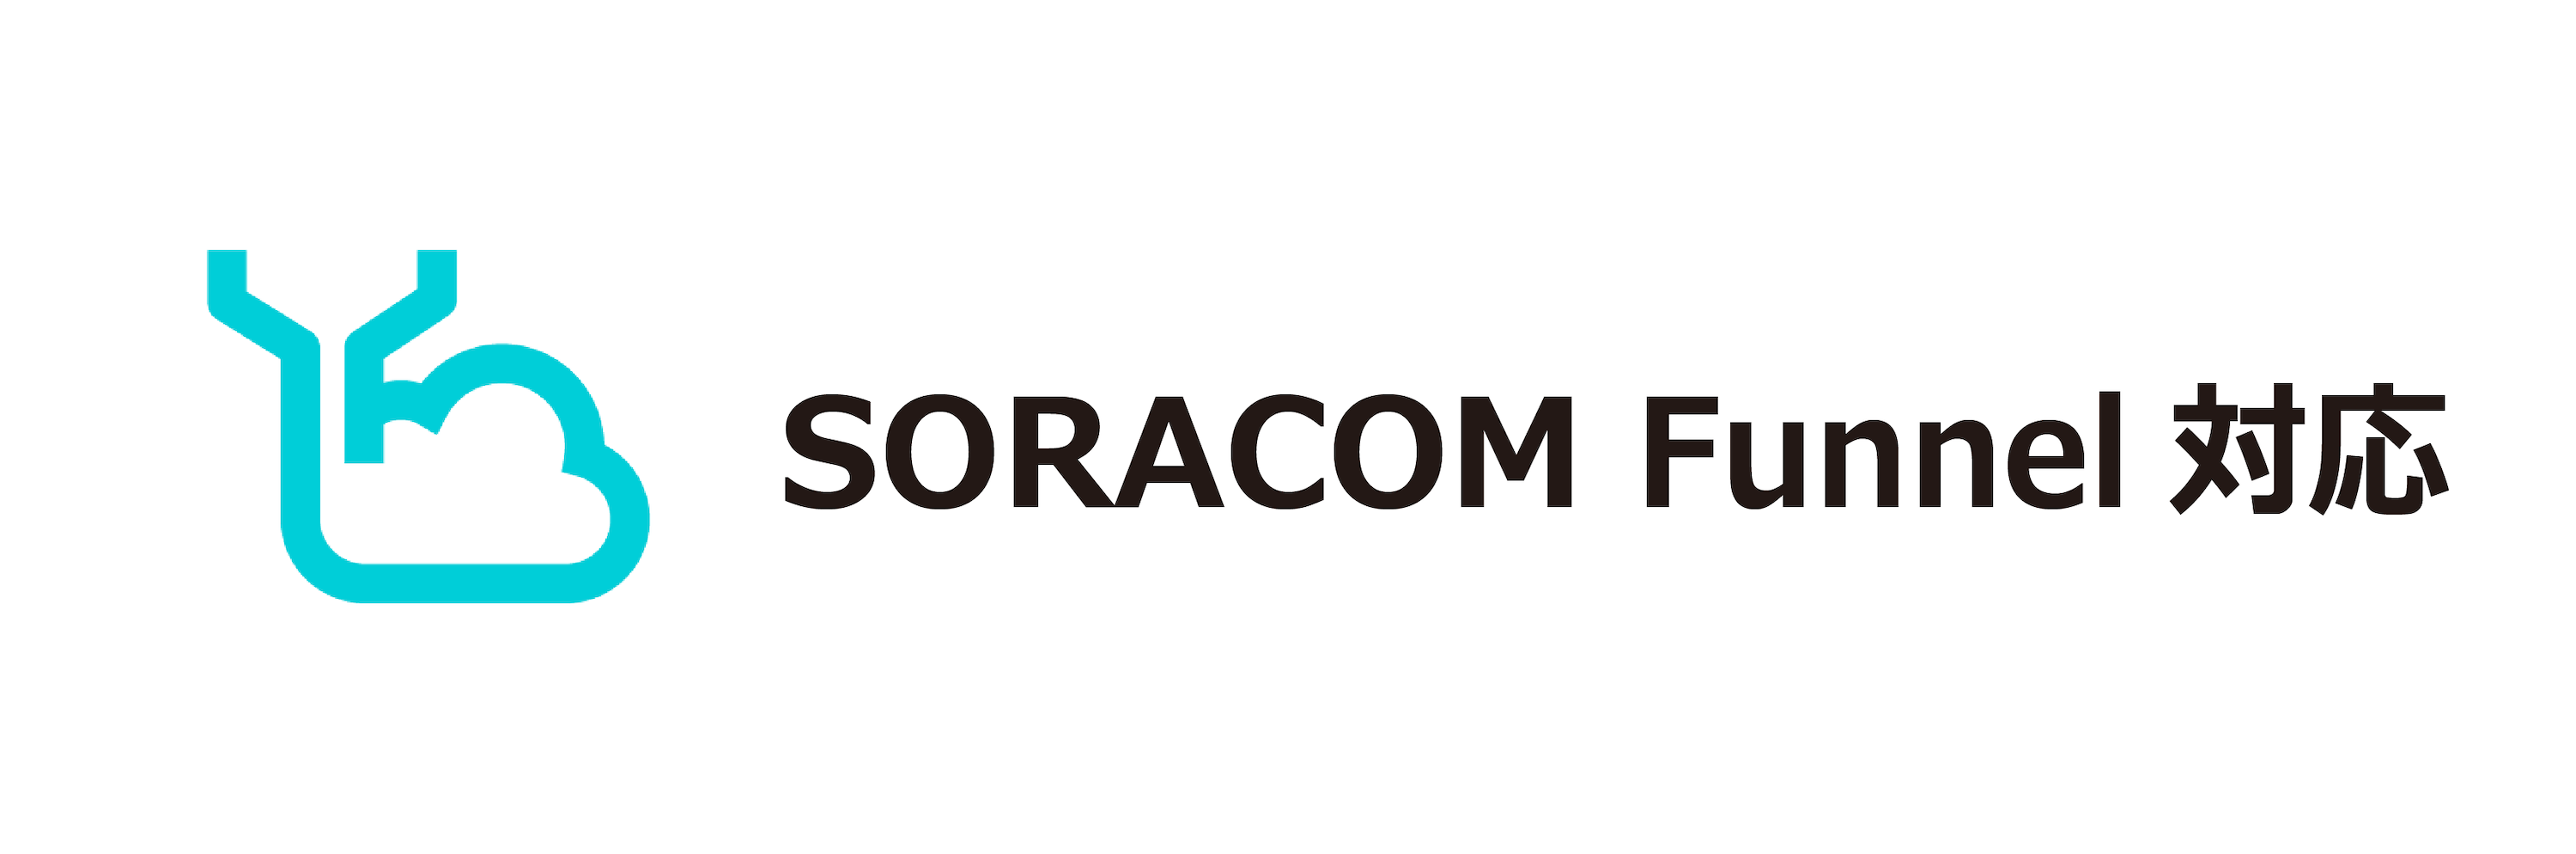 SORACOM Funnel対応